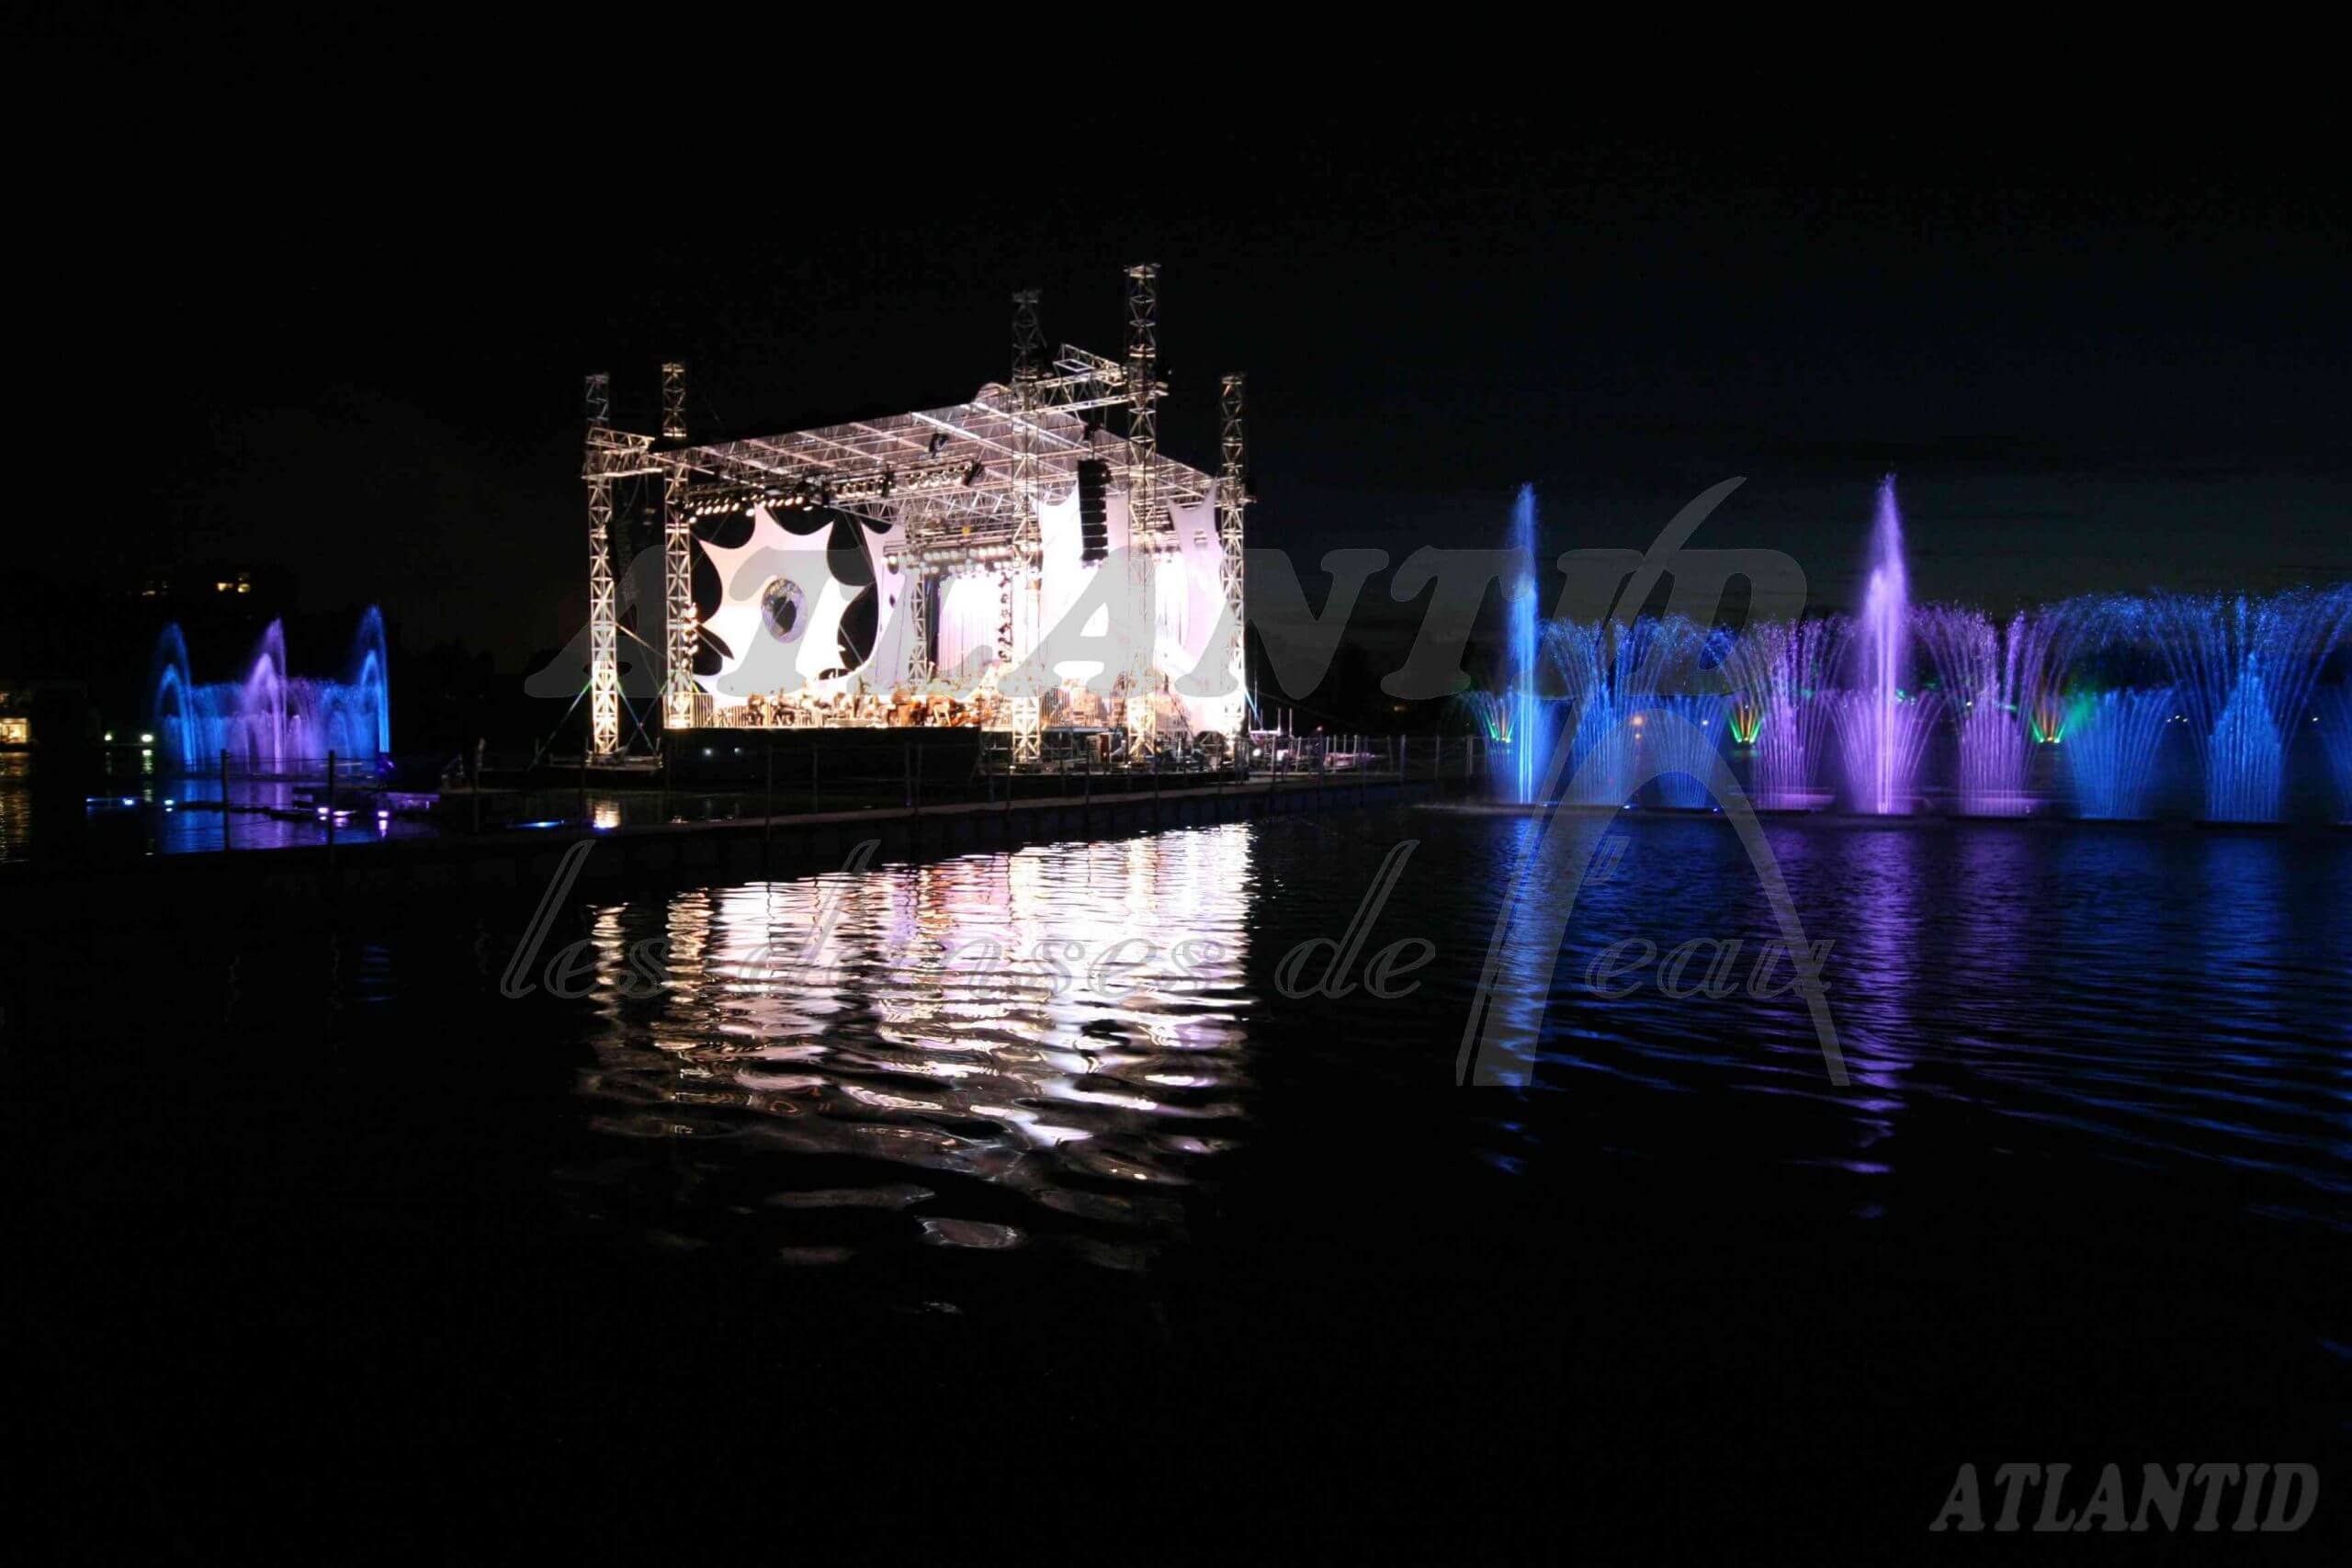 Atlantid - Show con orquesta - Foto de un escenario con un espectáculo de fuentes al fondo por la noche